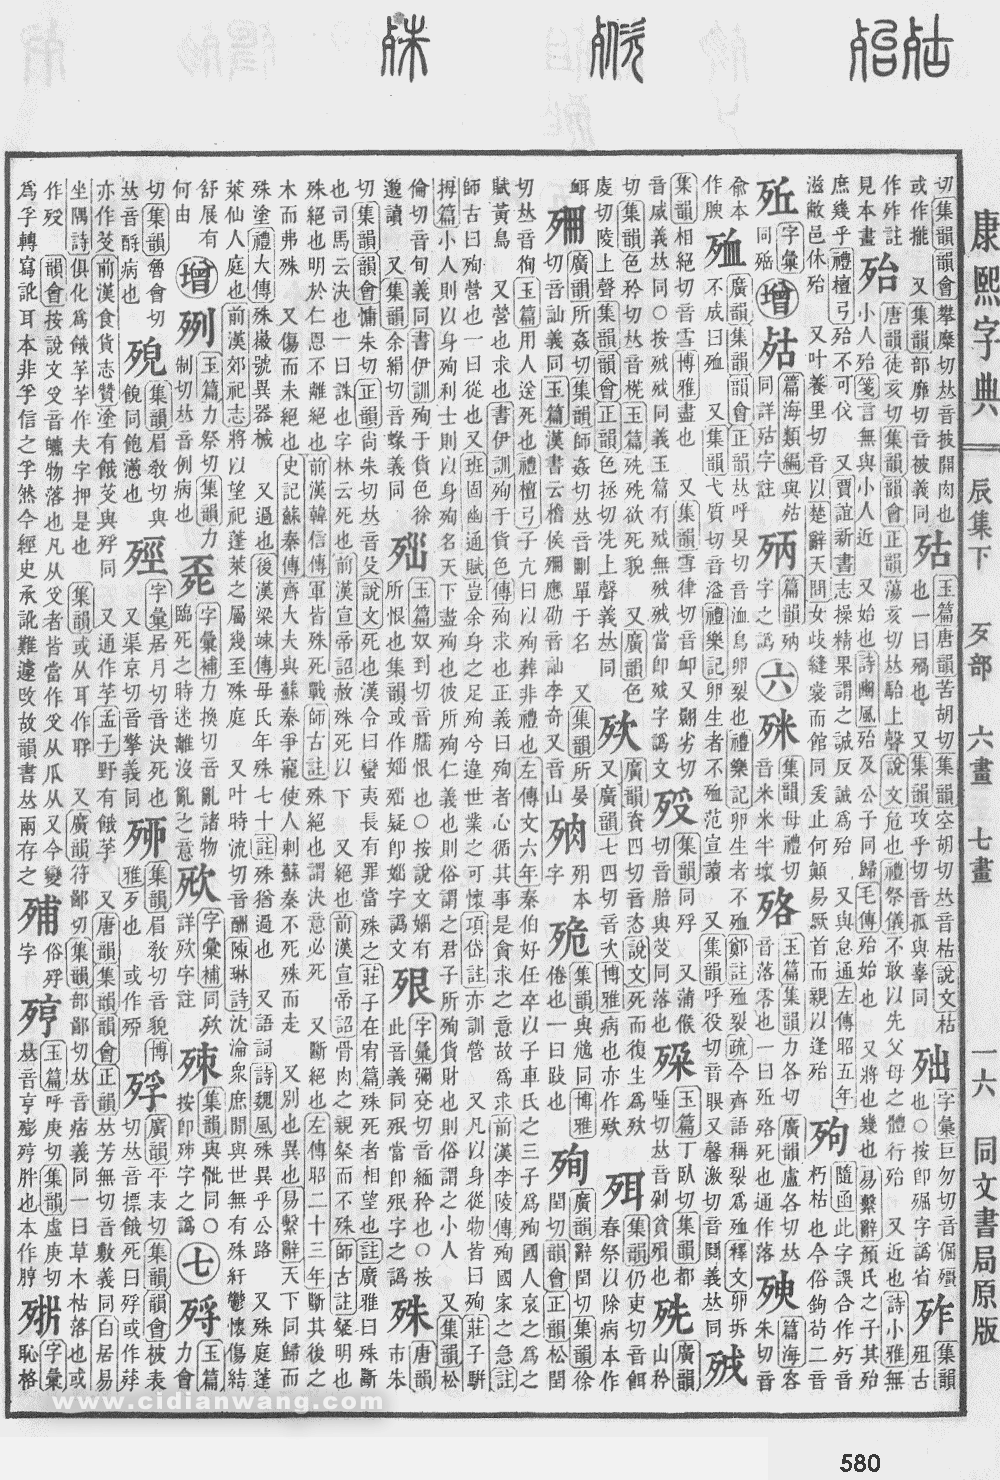 康熙字典掃描版第580頁